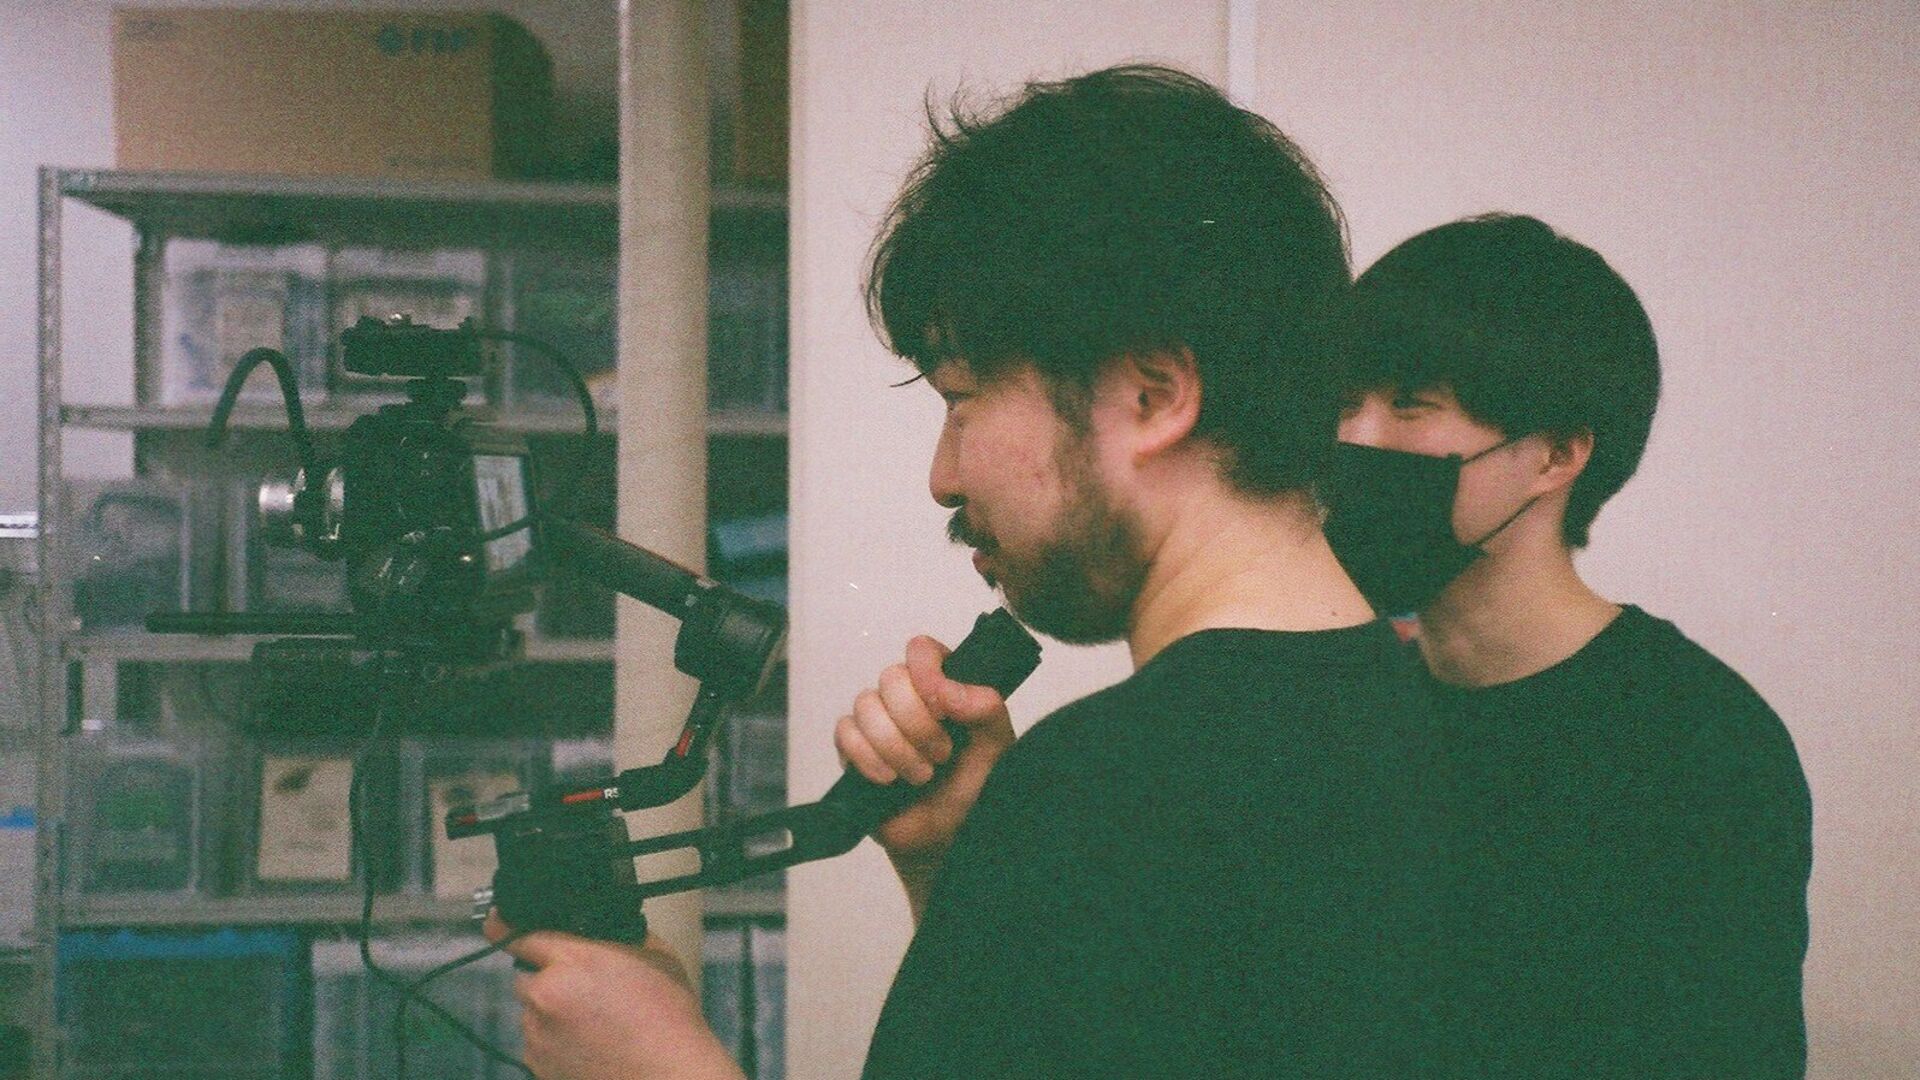 ジンバルにセットされたカメラを構える山本と鈴木の写真